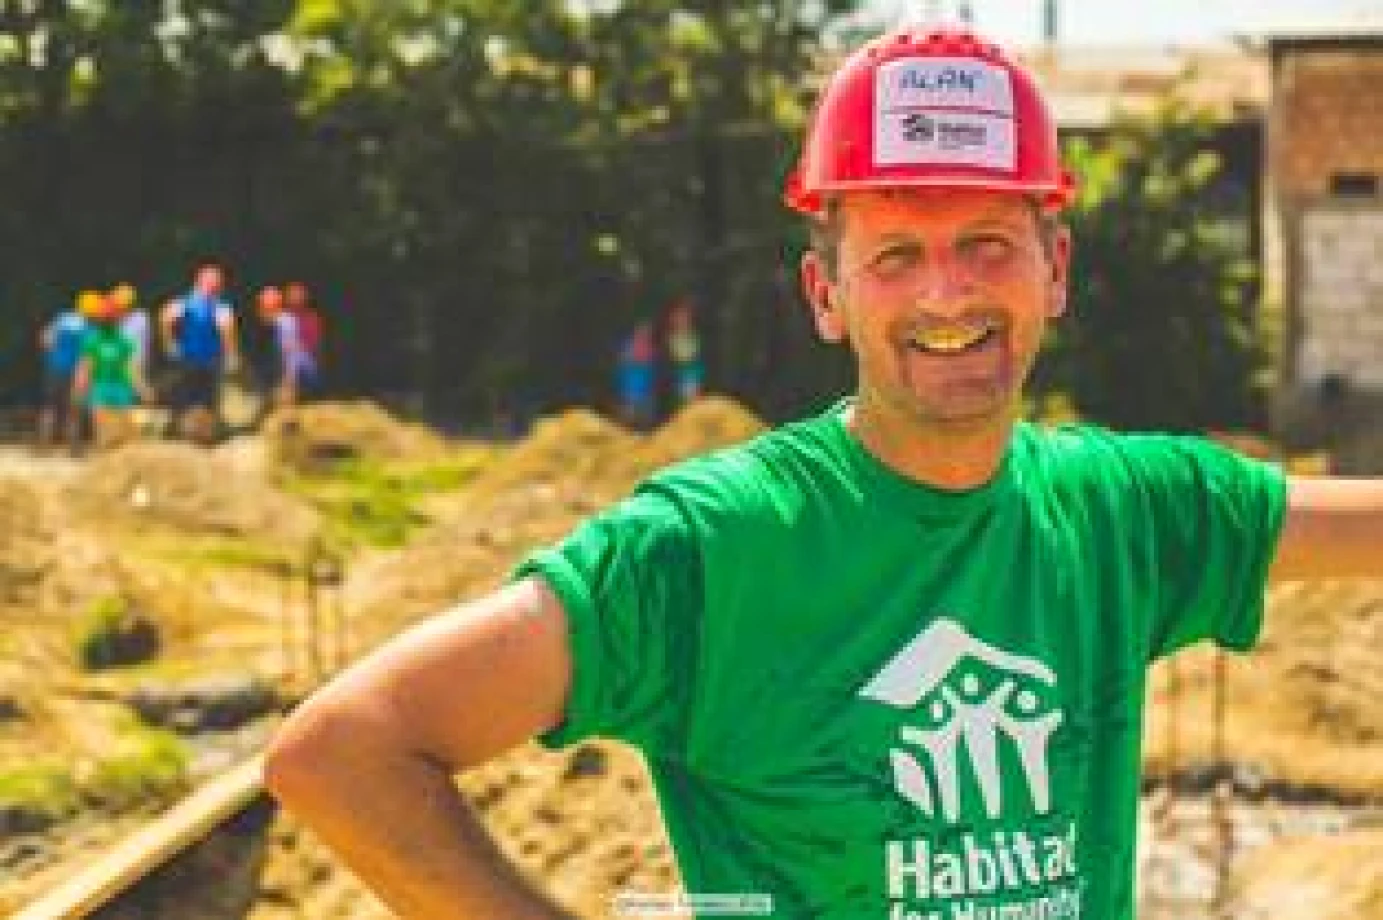 Volunteer Alan honoured by Habitat for Humanity